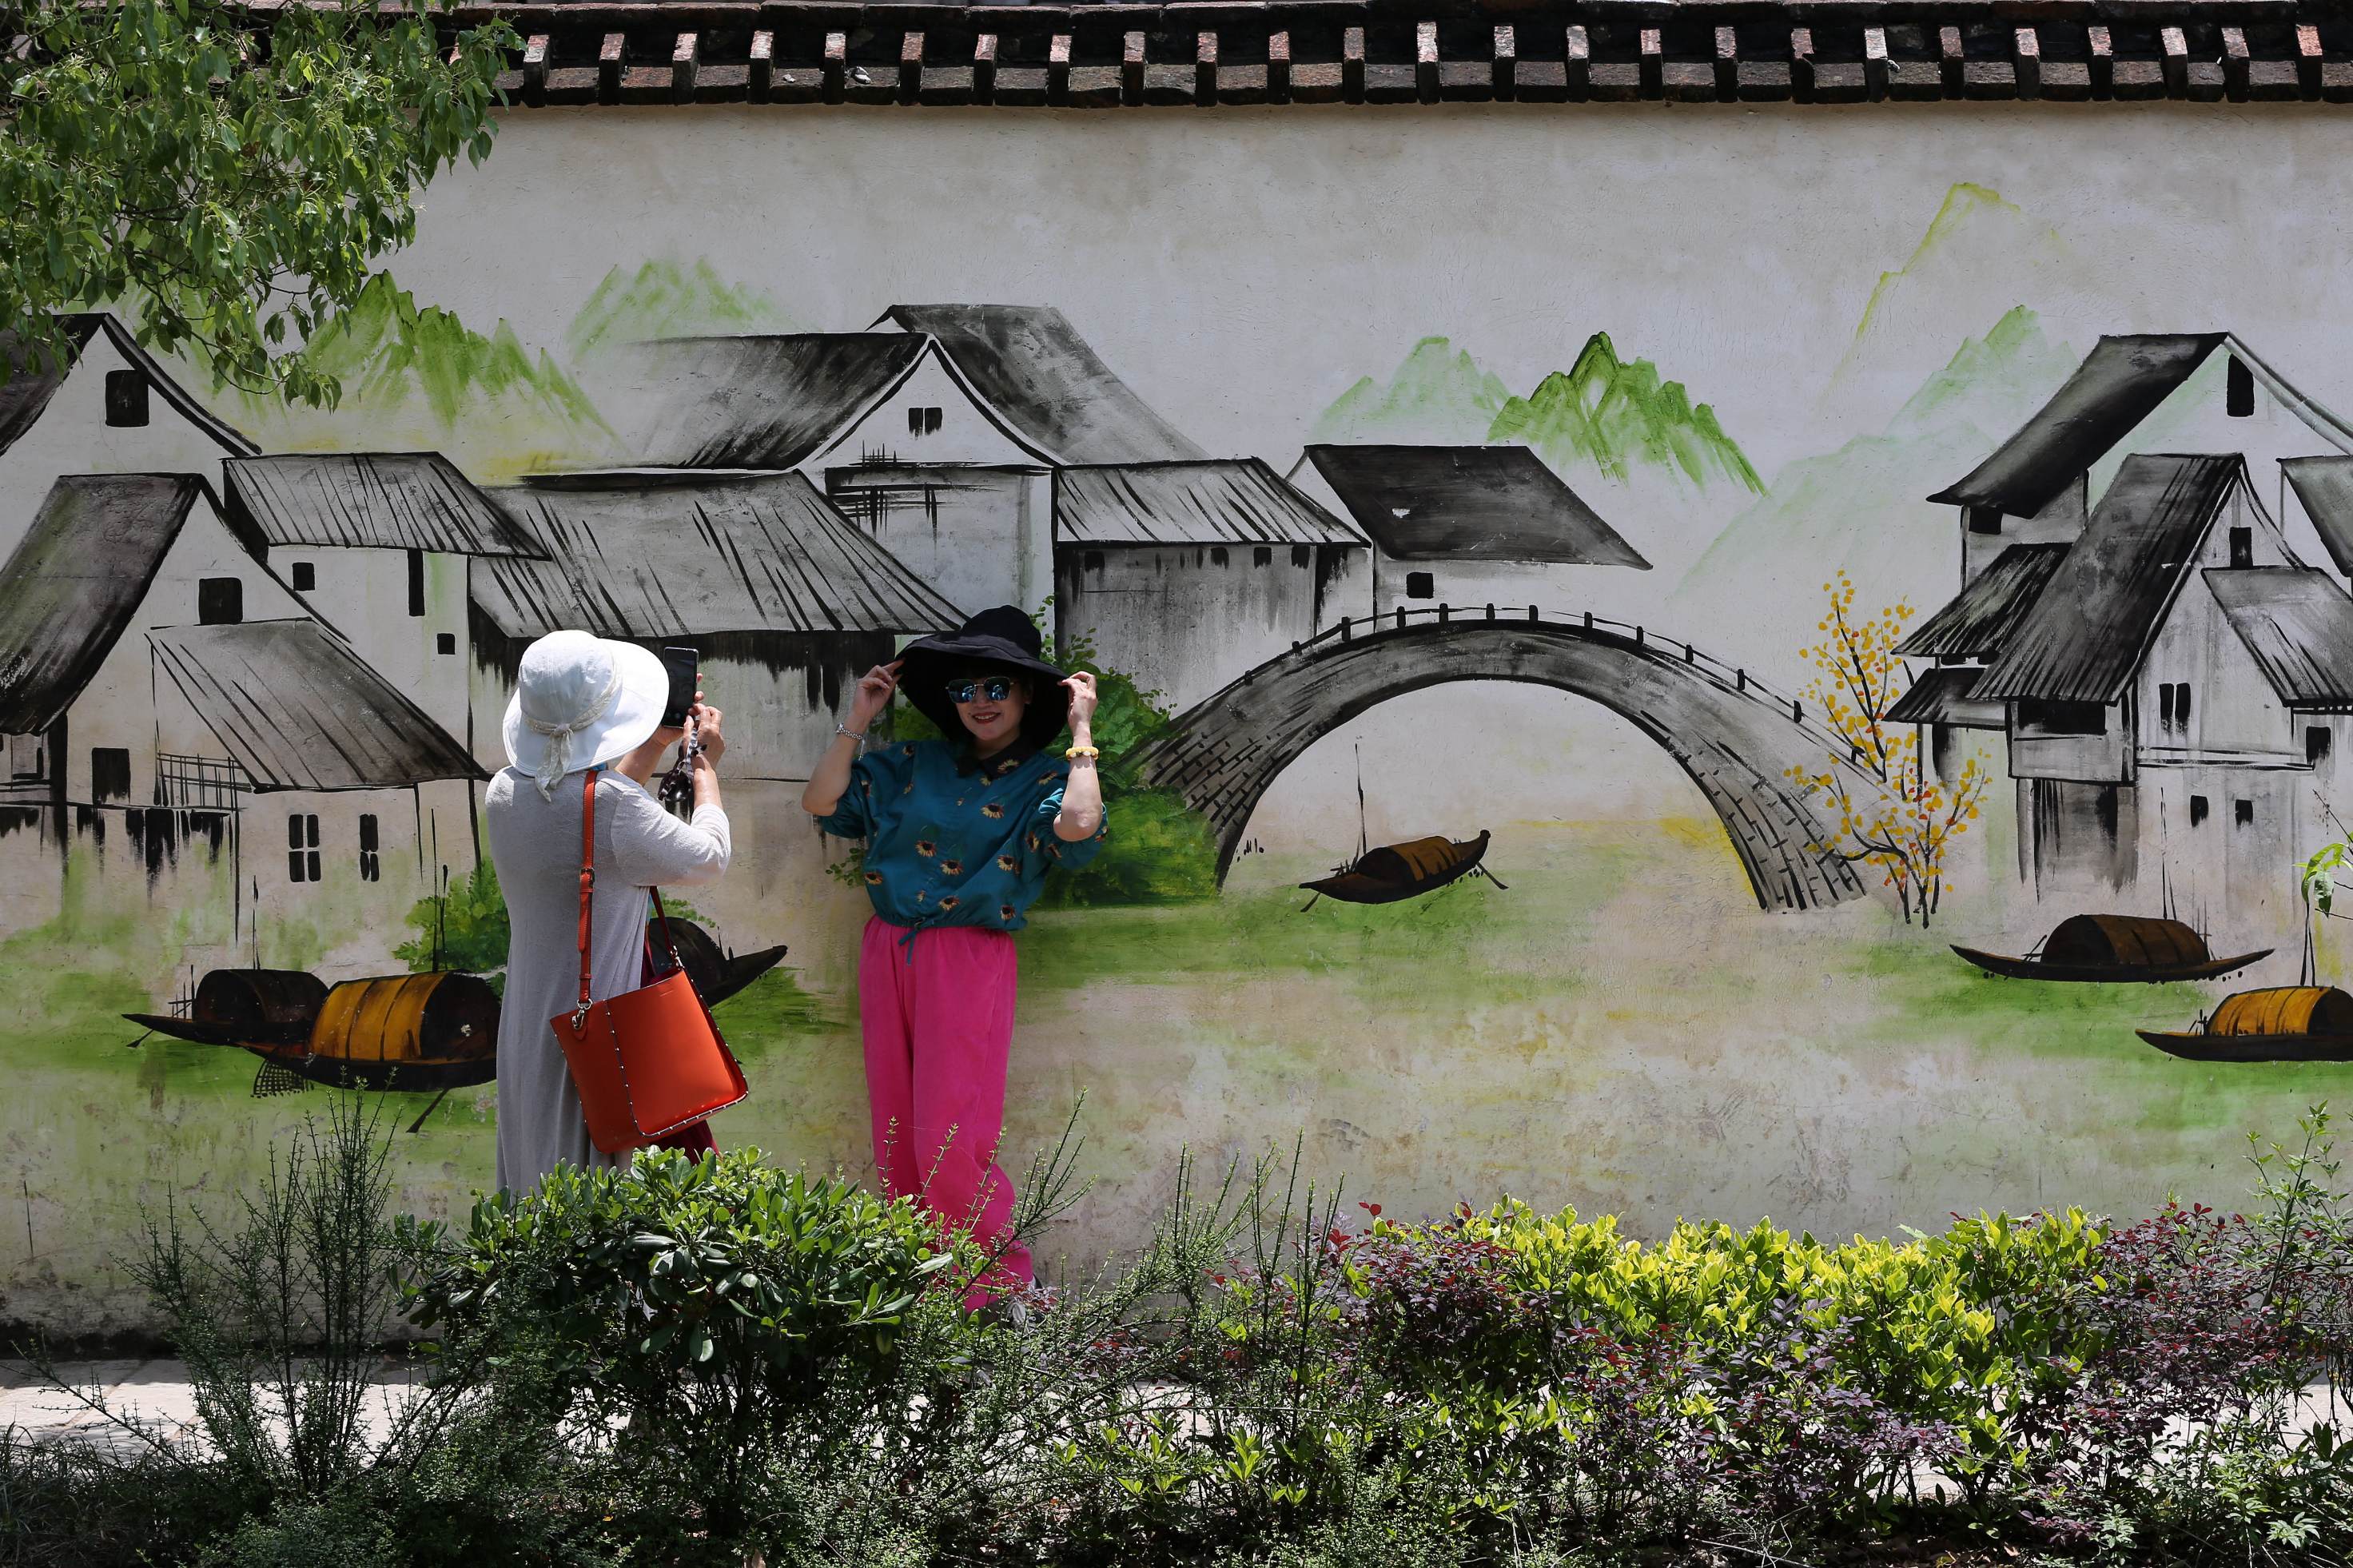 游客在黎里古镇拍照打卡。范黎芳摄 长三角示范区执委会供图